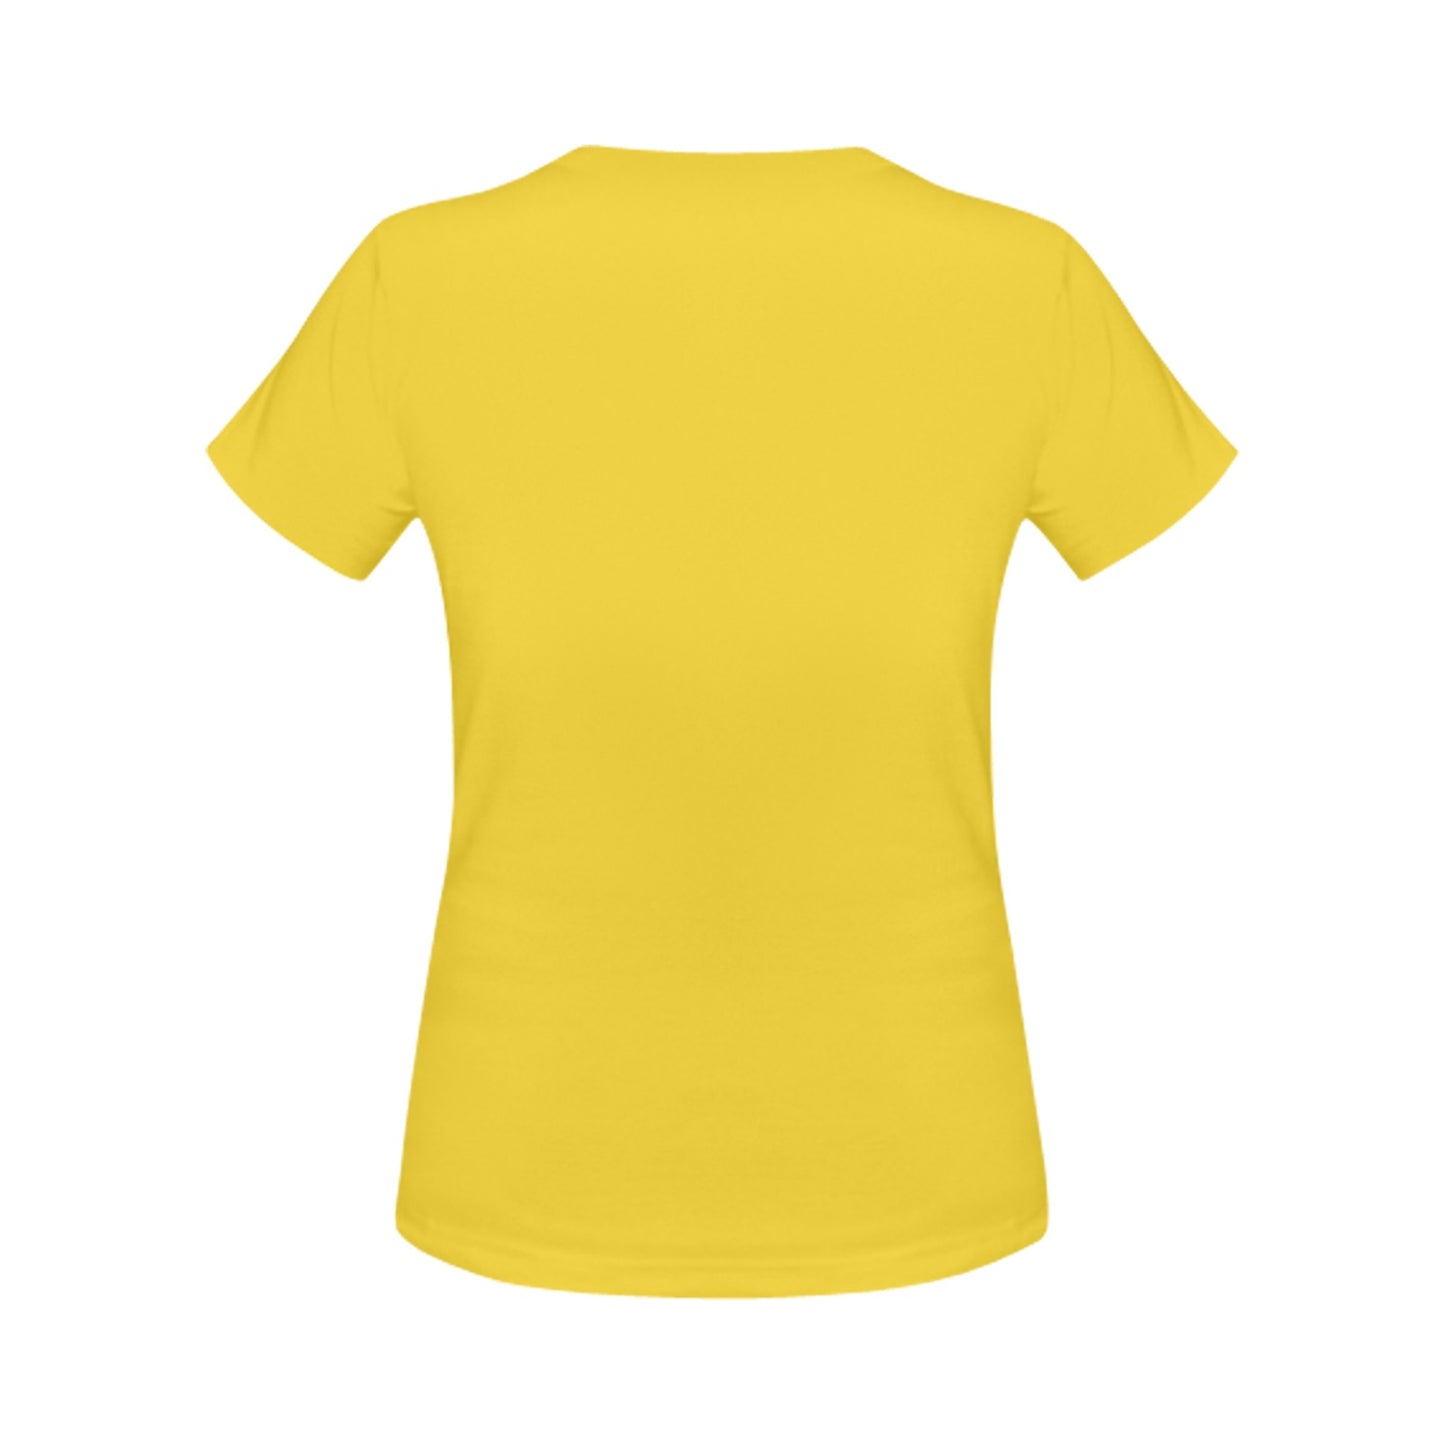 Face Painter T-Shirt Yellow